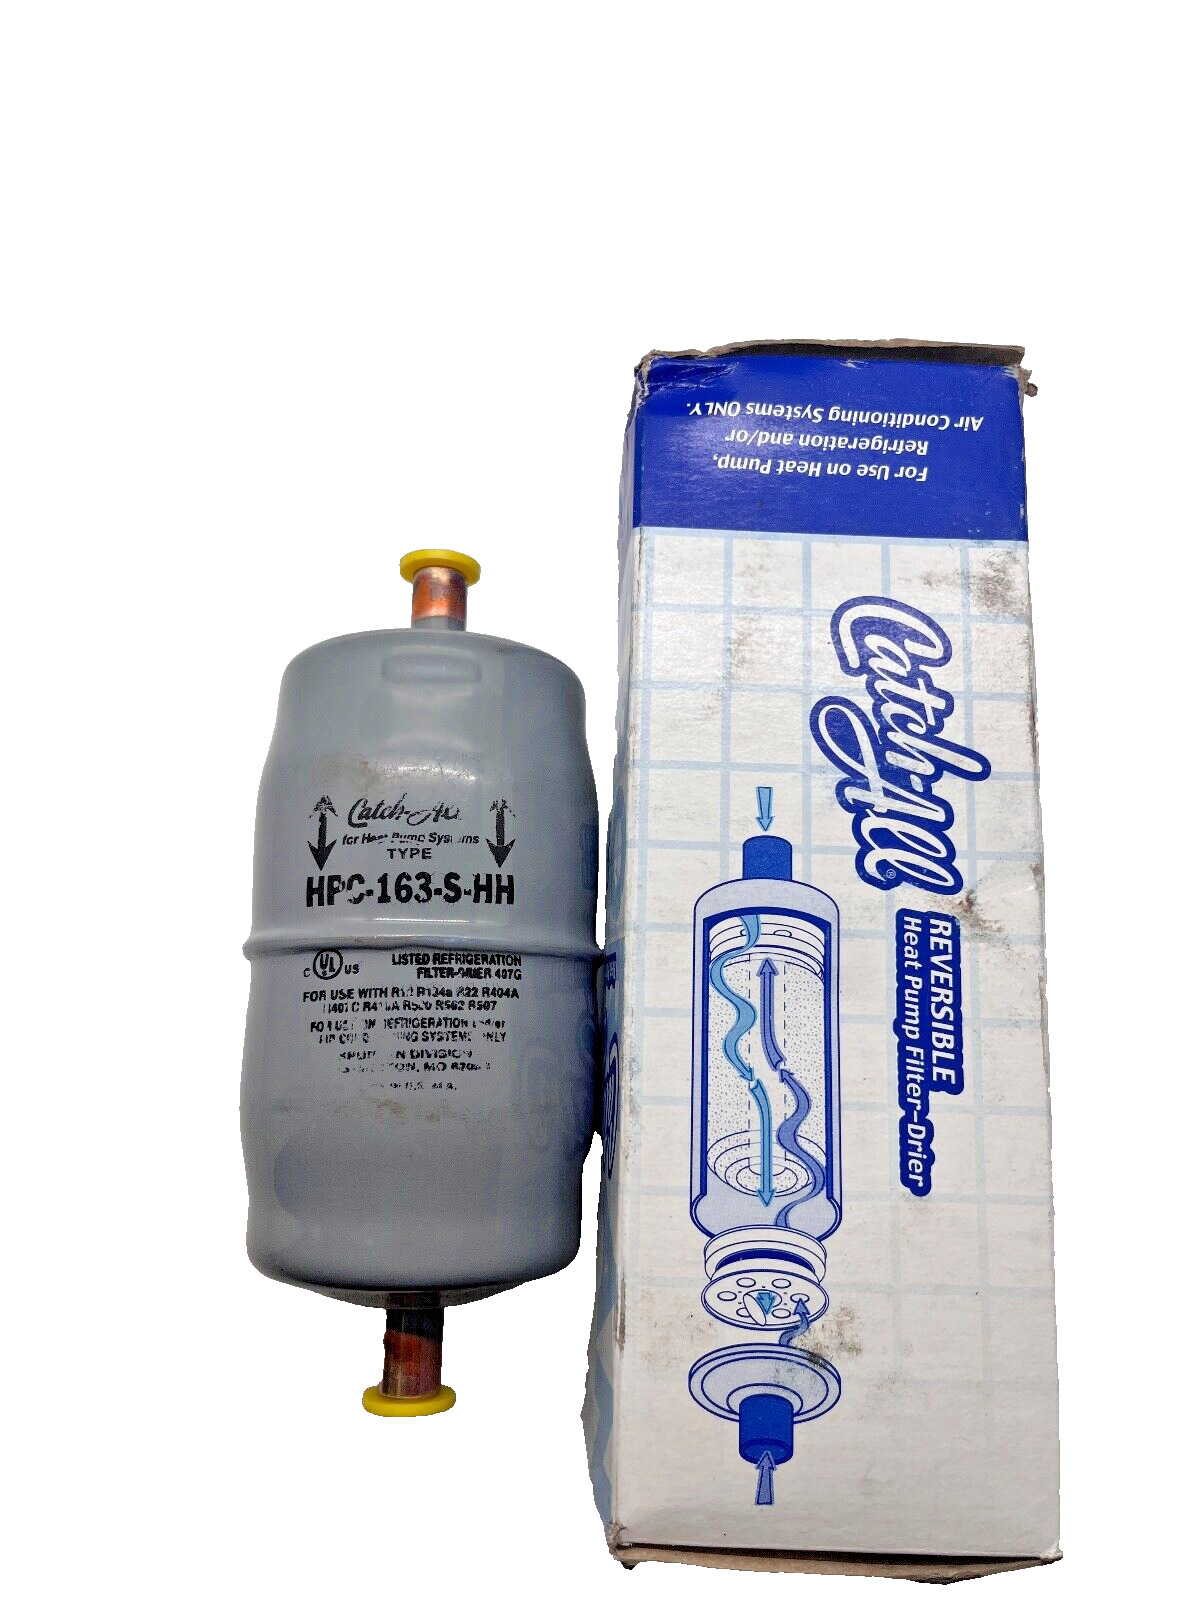 Sporlan Catch-All Reversible Heat Pump Filter-Drier HPC-163-S-HH 3/8 LOT of 2